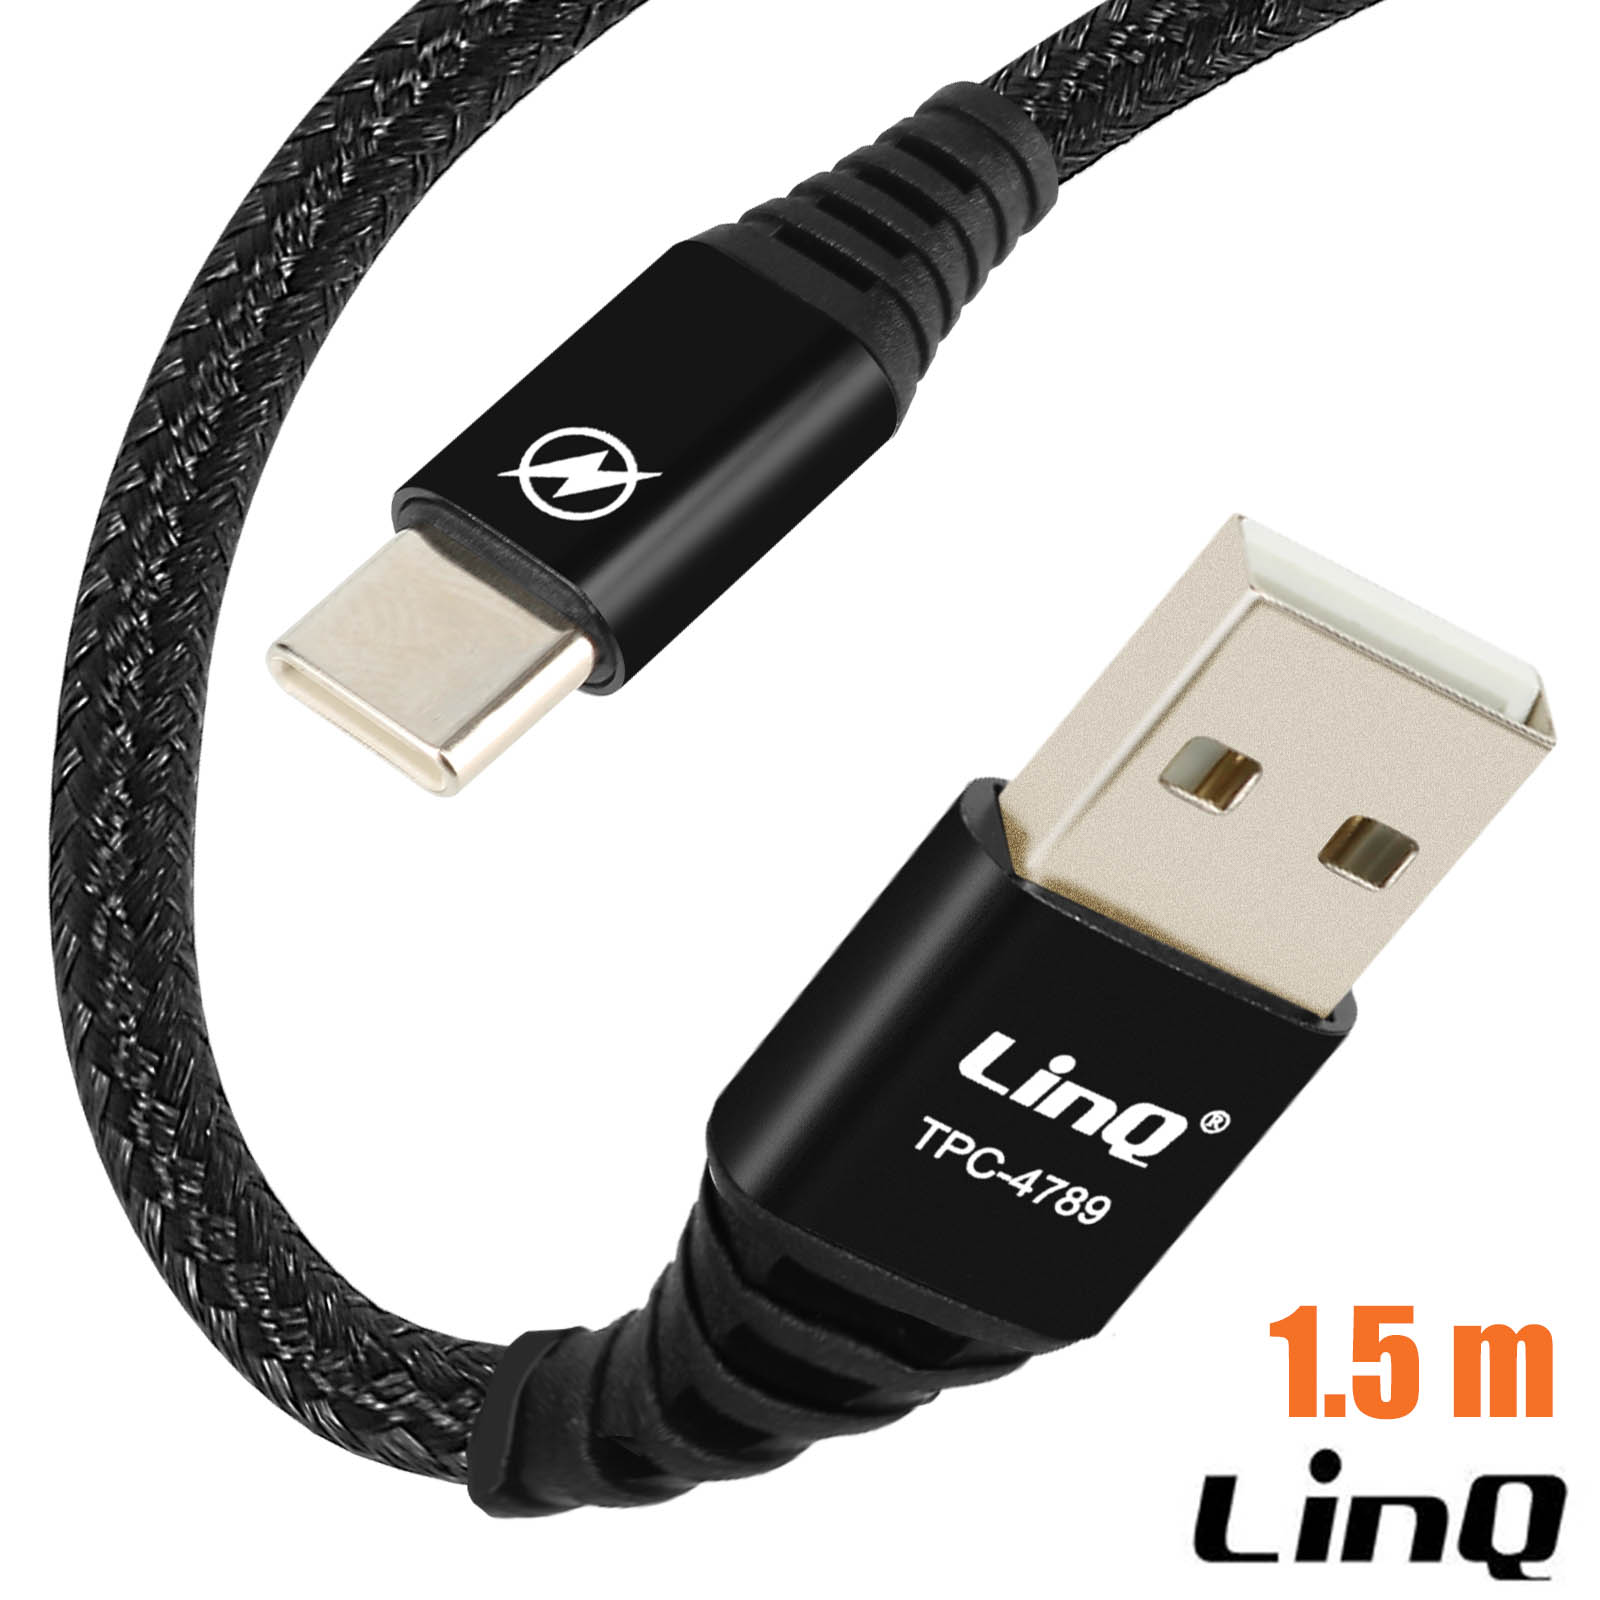 Chargeur USB-C 25W + Câble Nylon USB-C vers USB-C Gris 1M pour